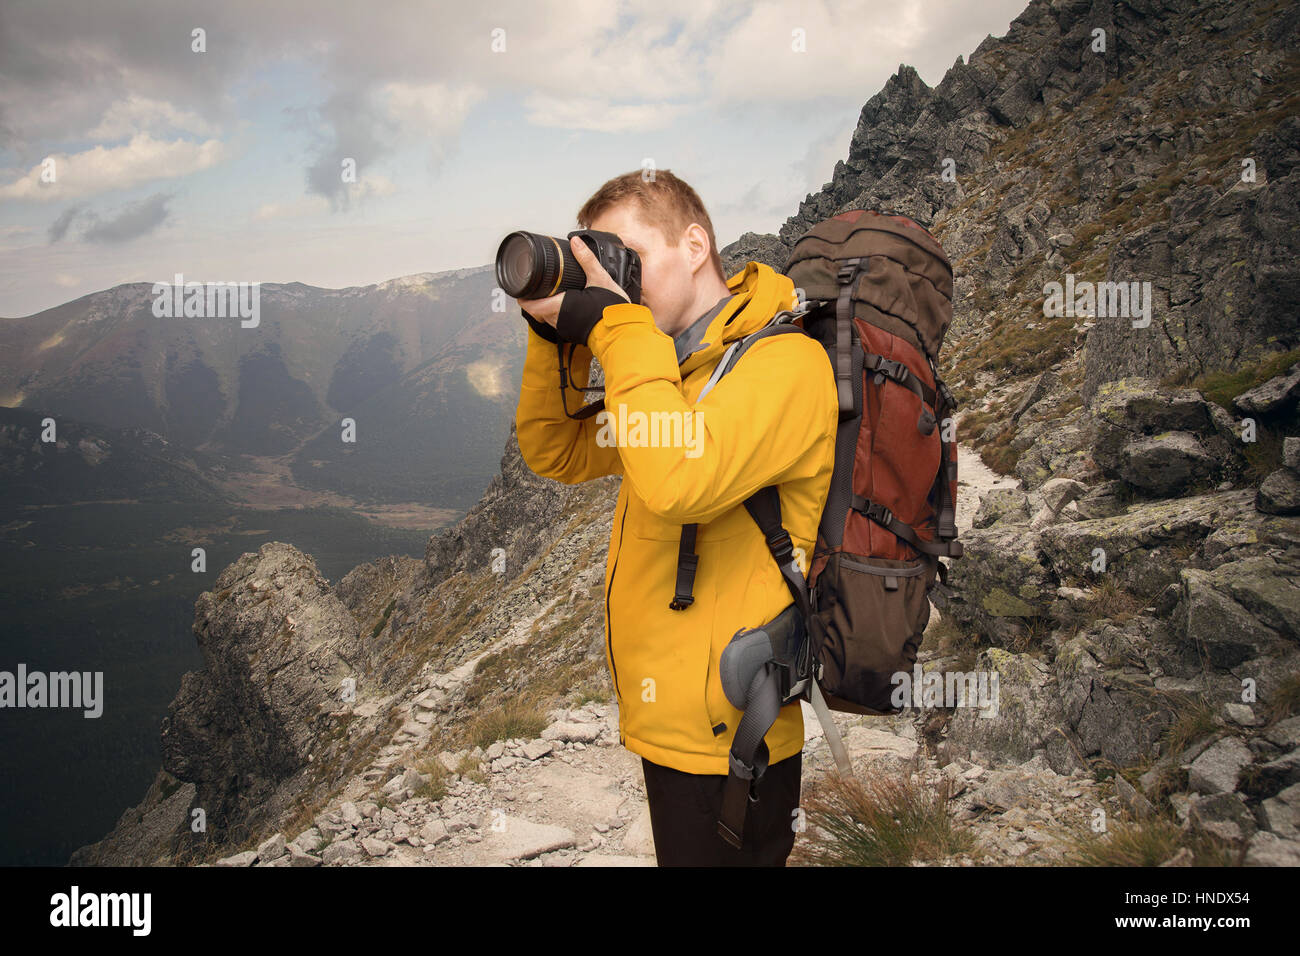 Randonneur de photographier à la montagne Banque D'Images